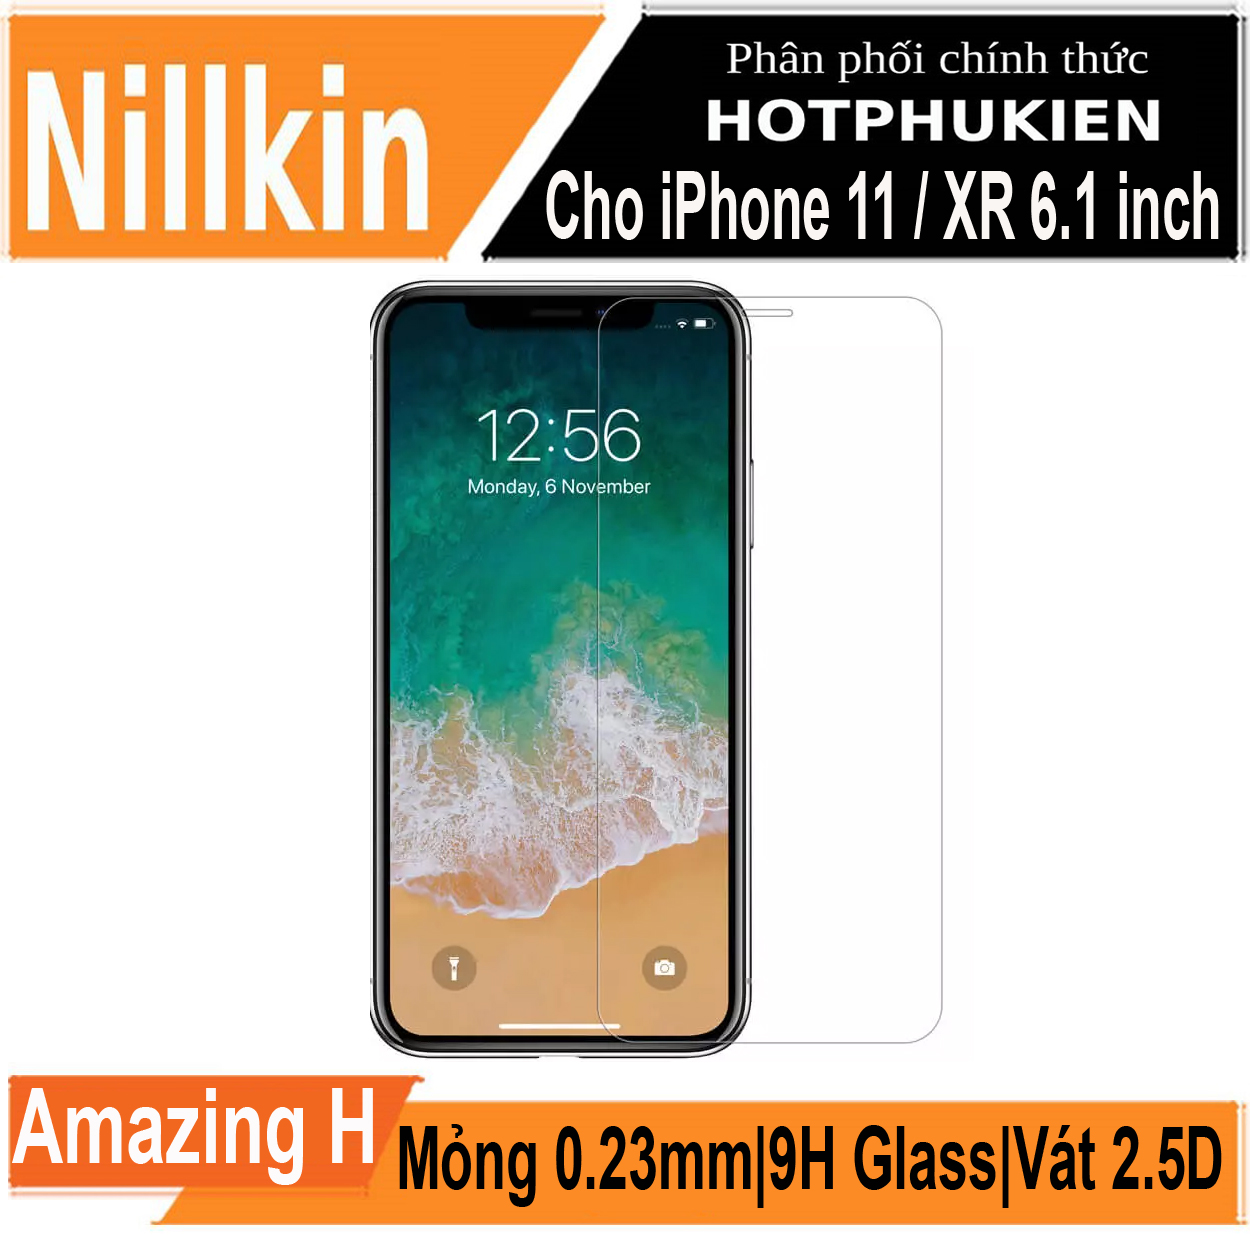 Miếng dán kính cường lực cho iPhone XR / iPhone 11 (6.1 inch) hiệu Nillkin (độ cứng 9H, mỏng 0.33mm, chống dầu, hạn chế vân tay) - Hàng chính hãng